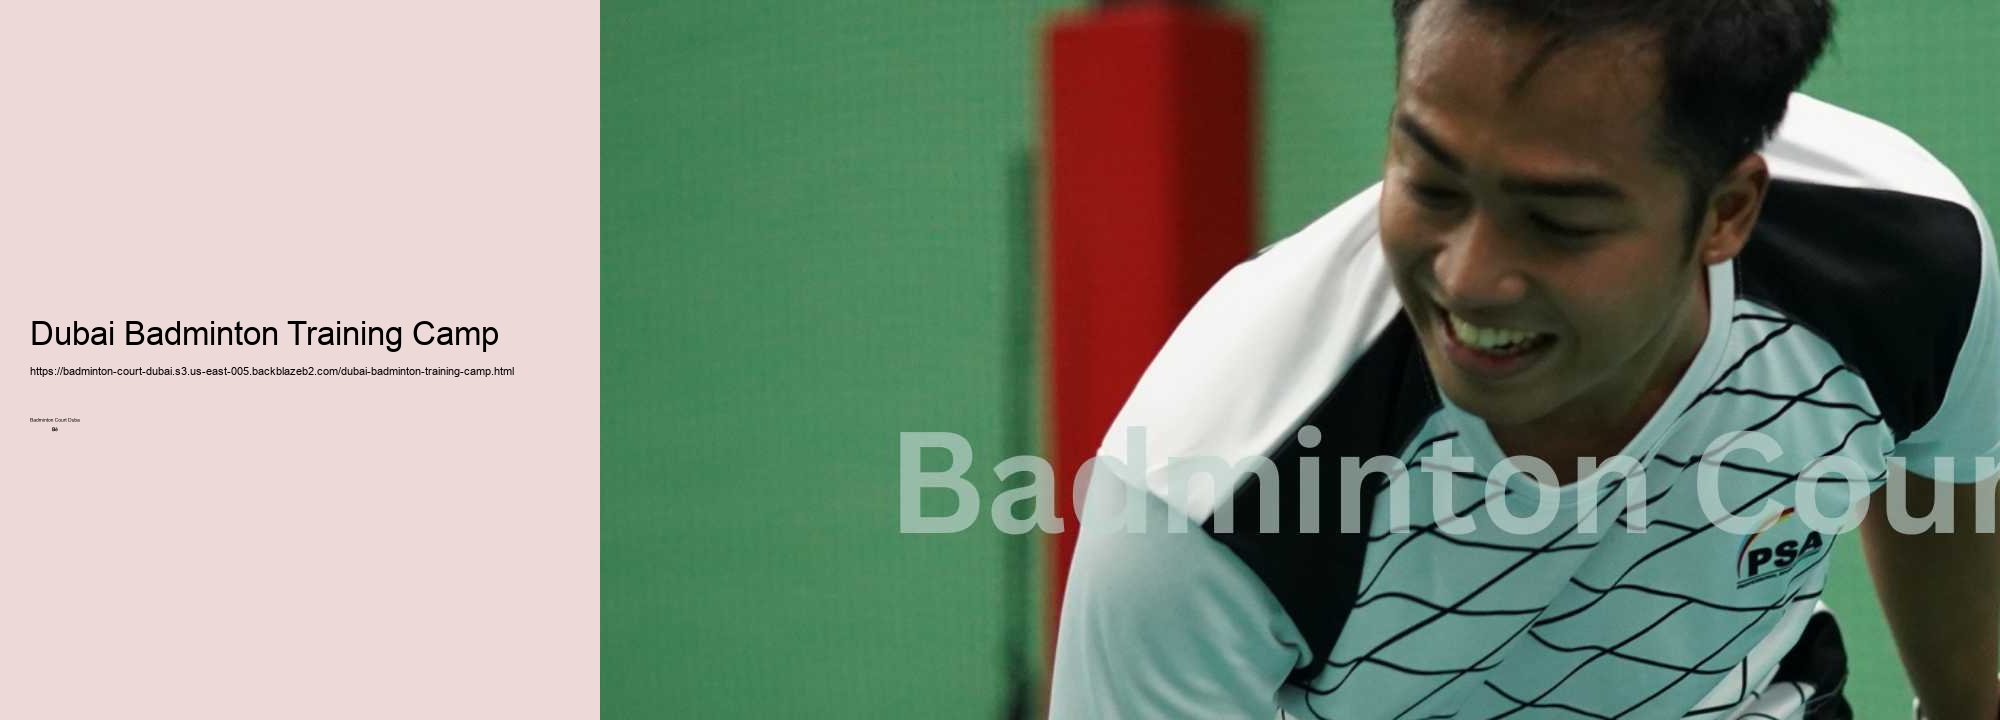 Dubai Badminton Training Camp